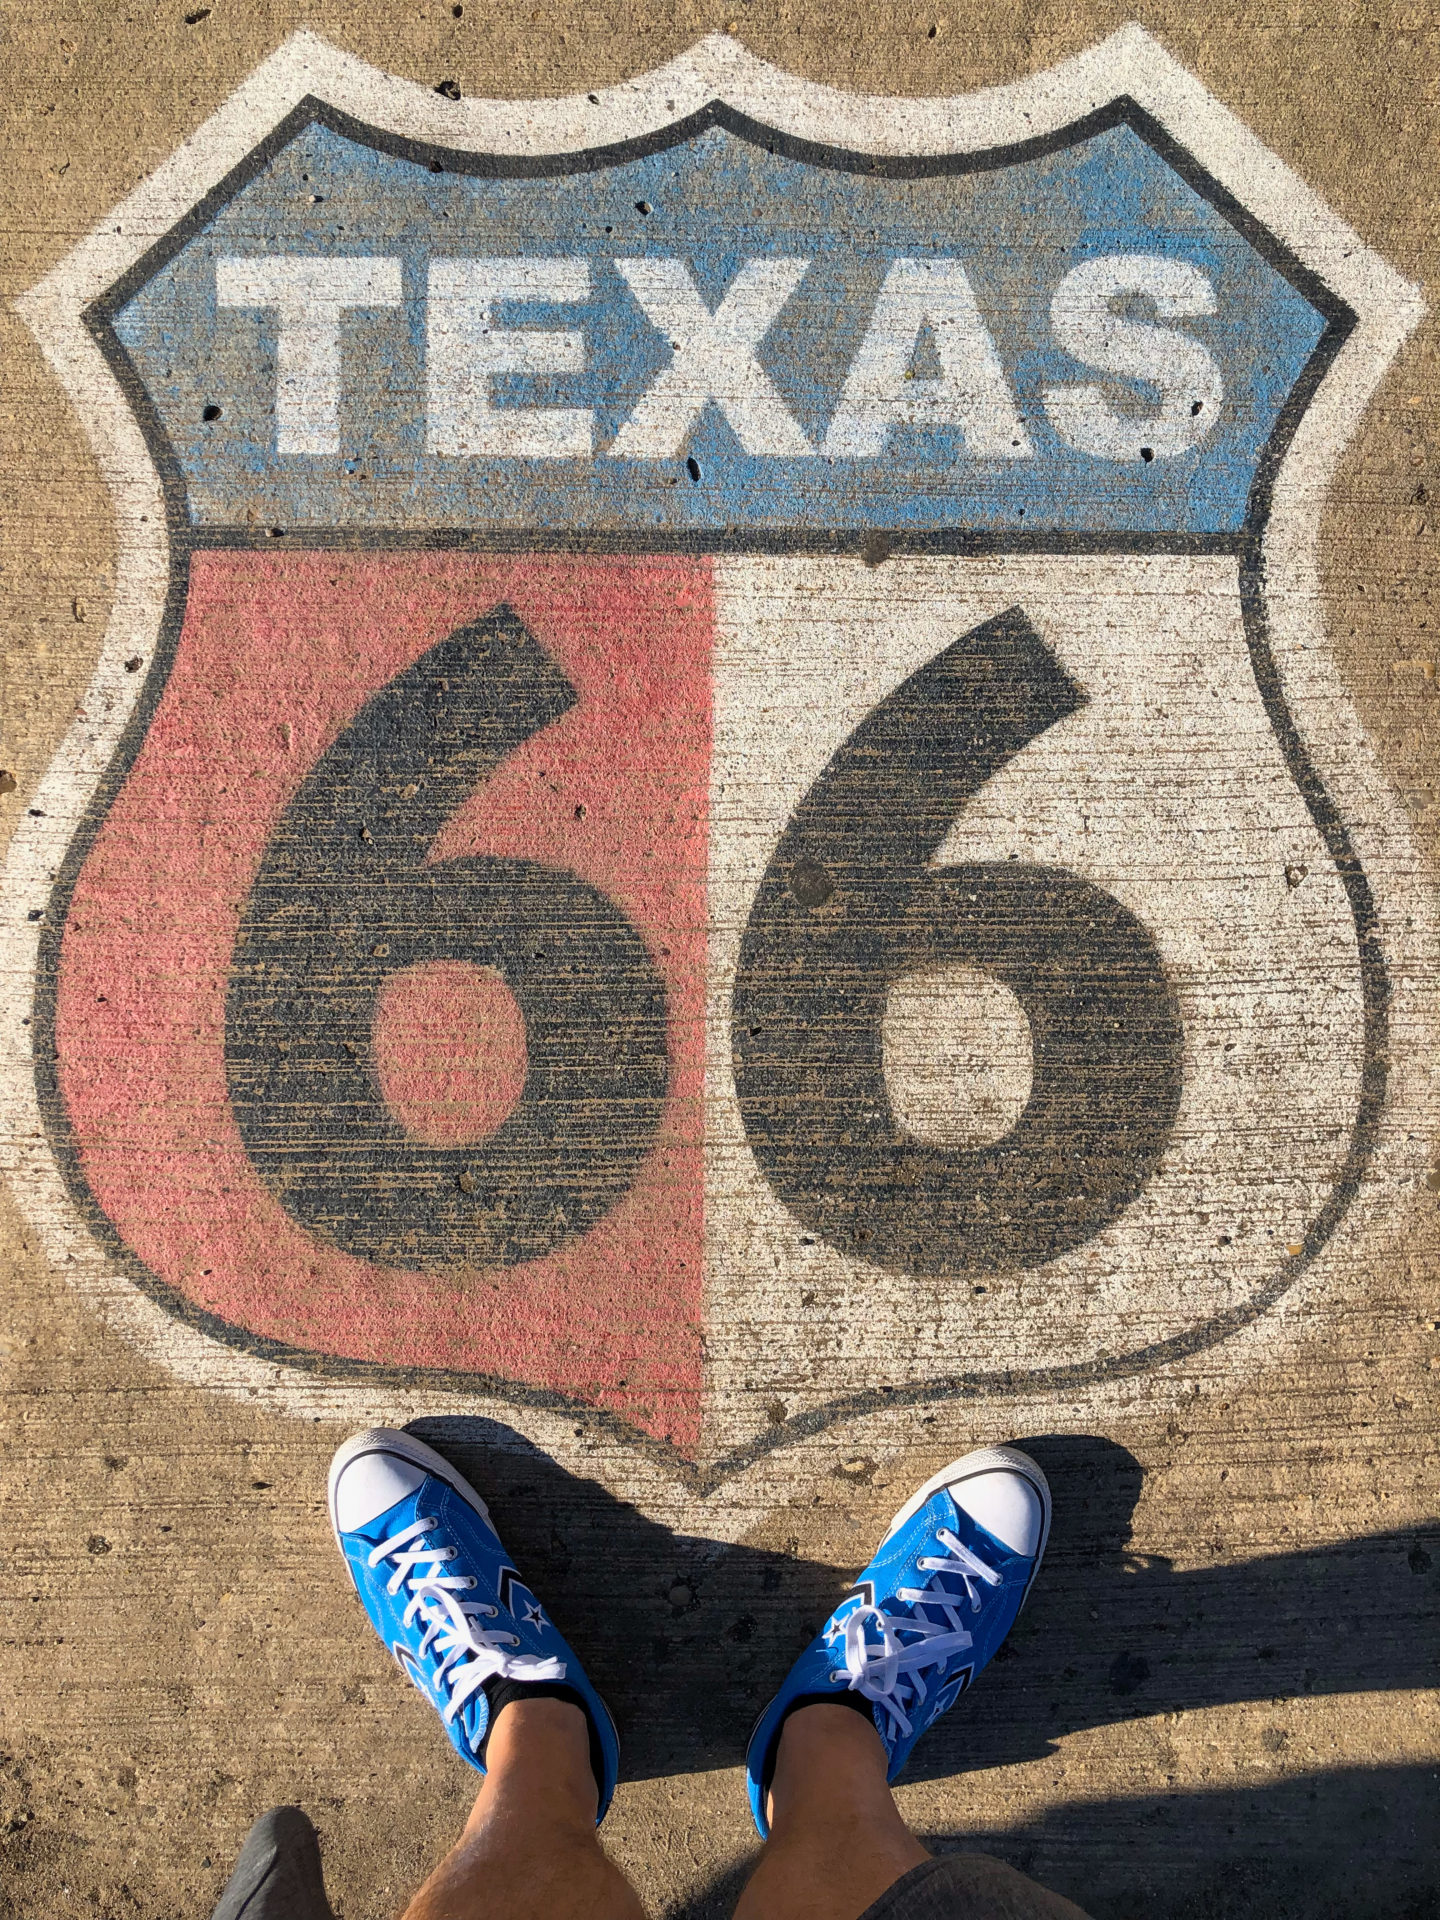 Logo der Route 66 auf dem Asphalt in Texas